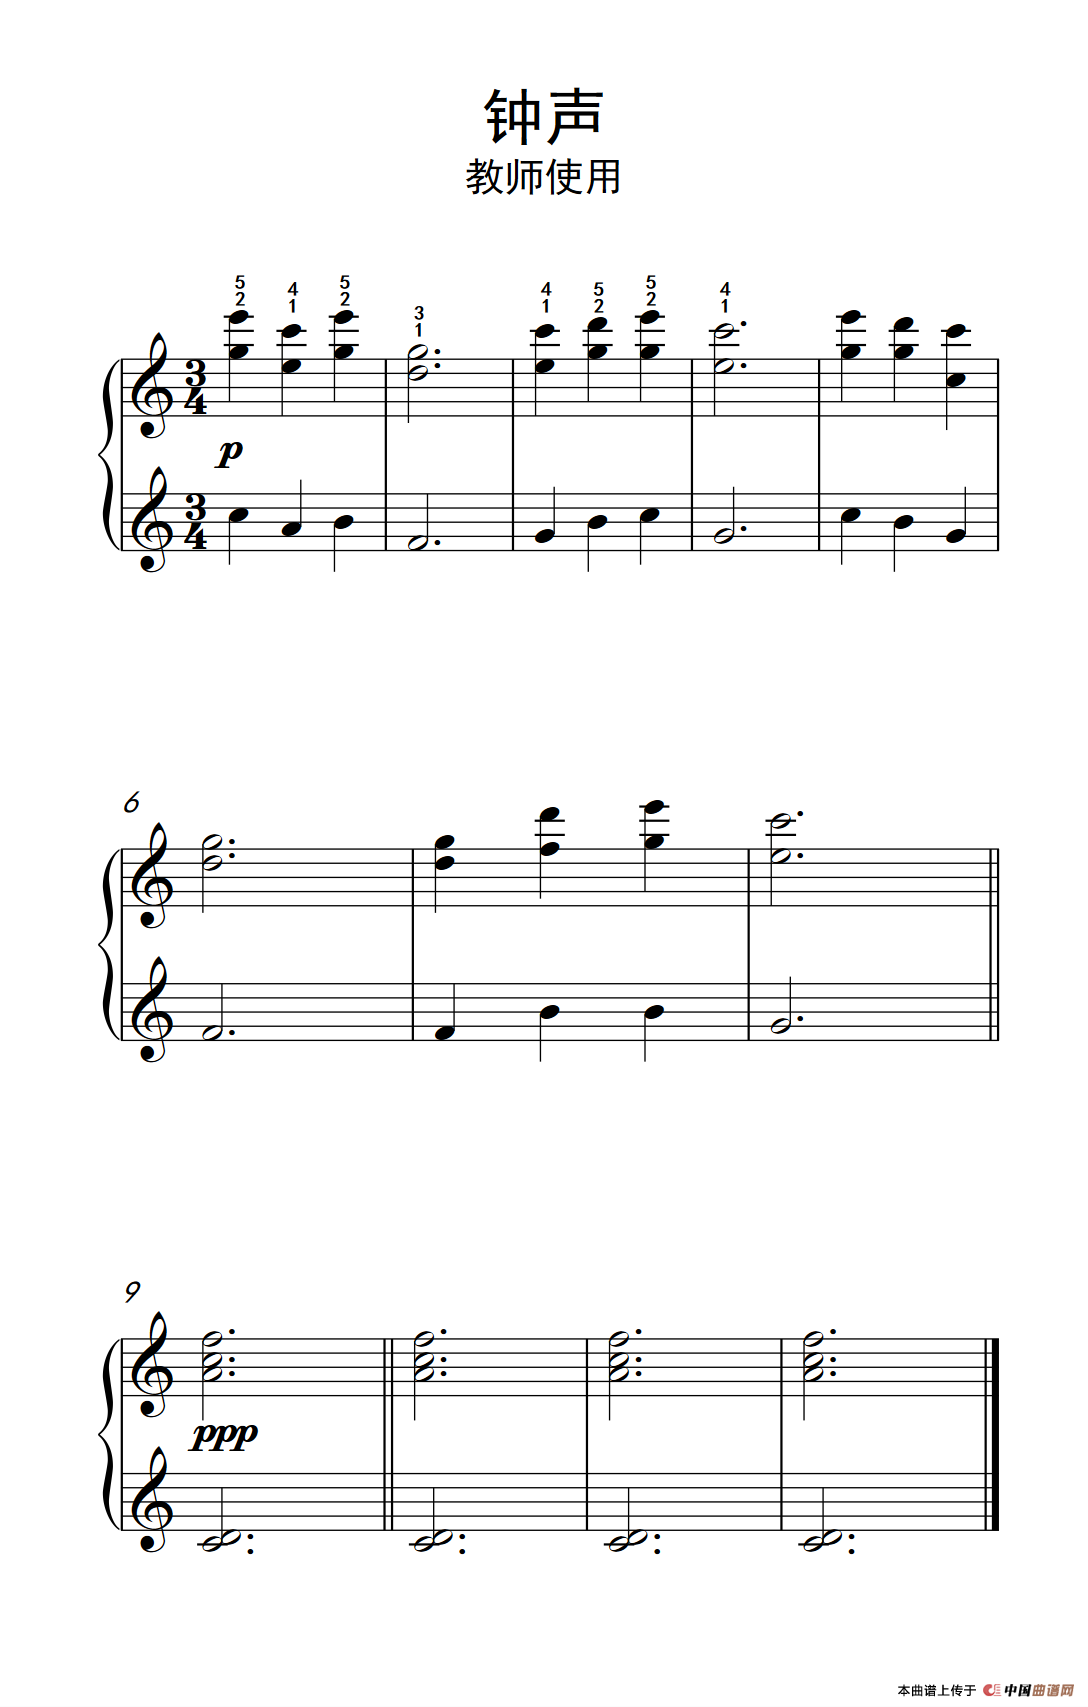 《伏尔加河纤夫曲-教师使用》钢琴曲谱图分享